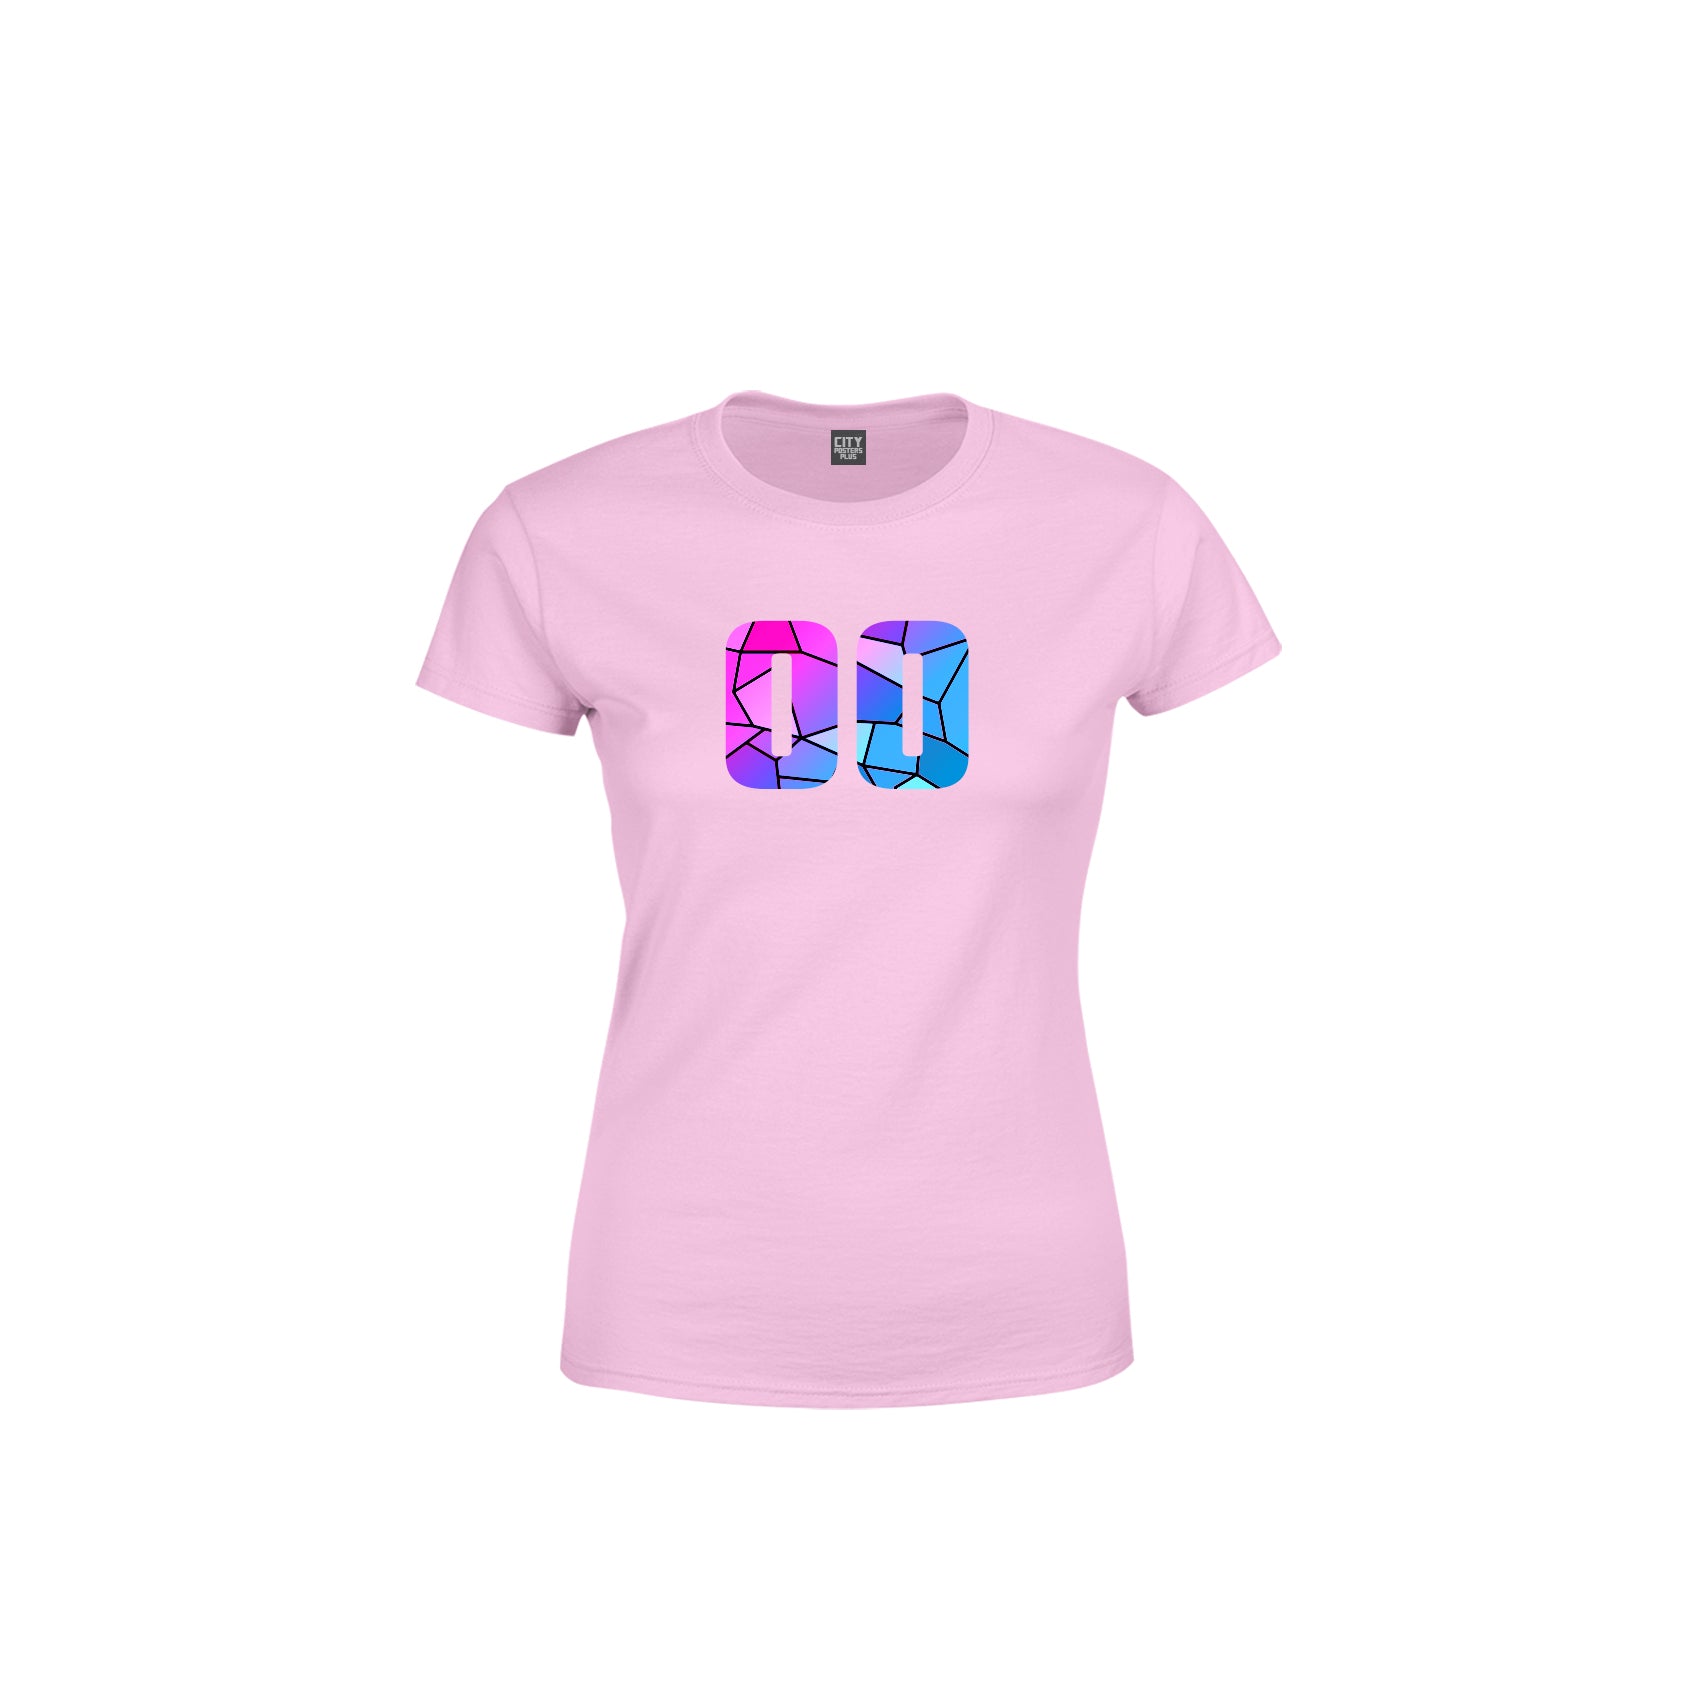 00 Number Women's T-Shirt (Light Pink)